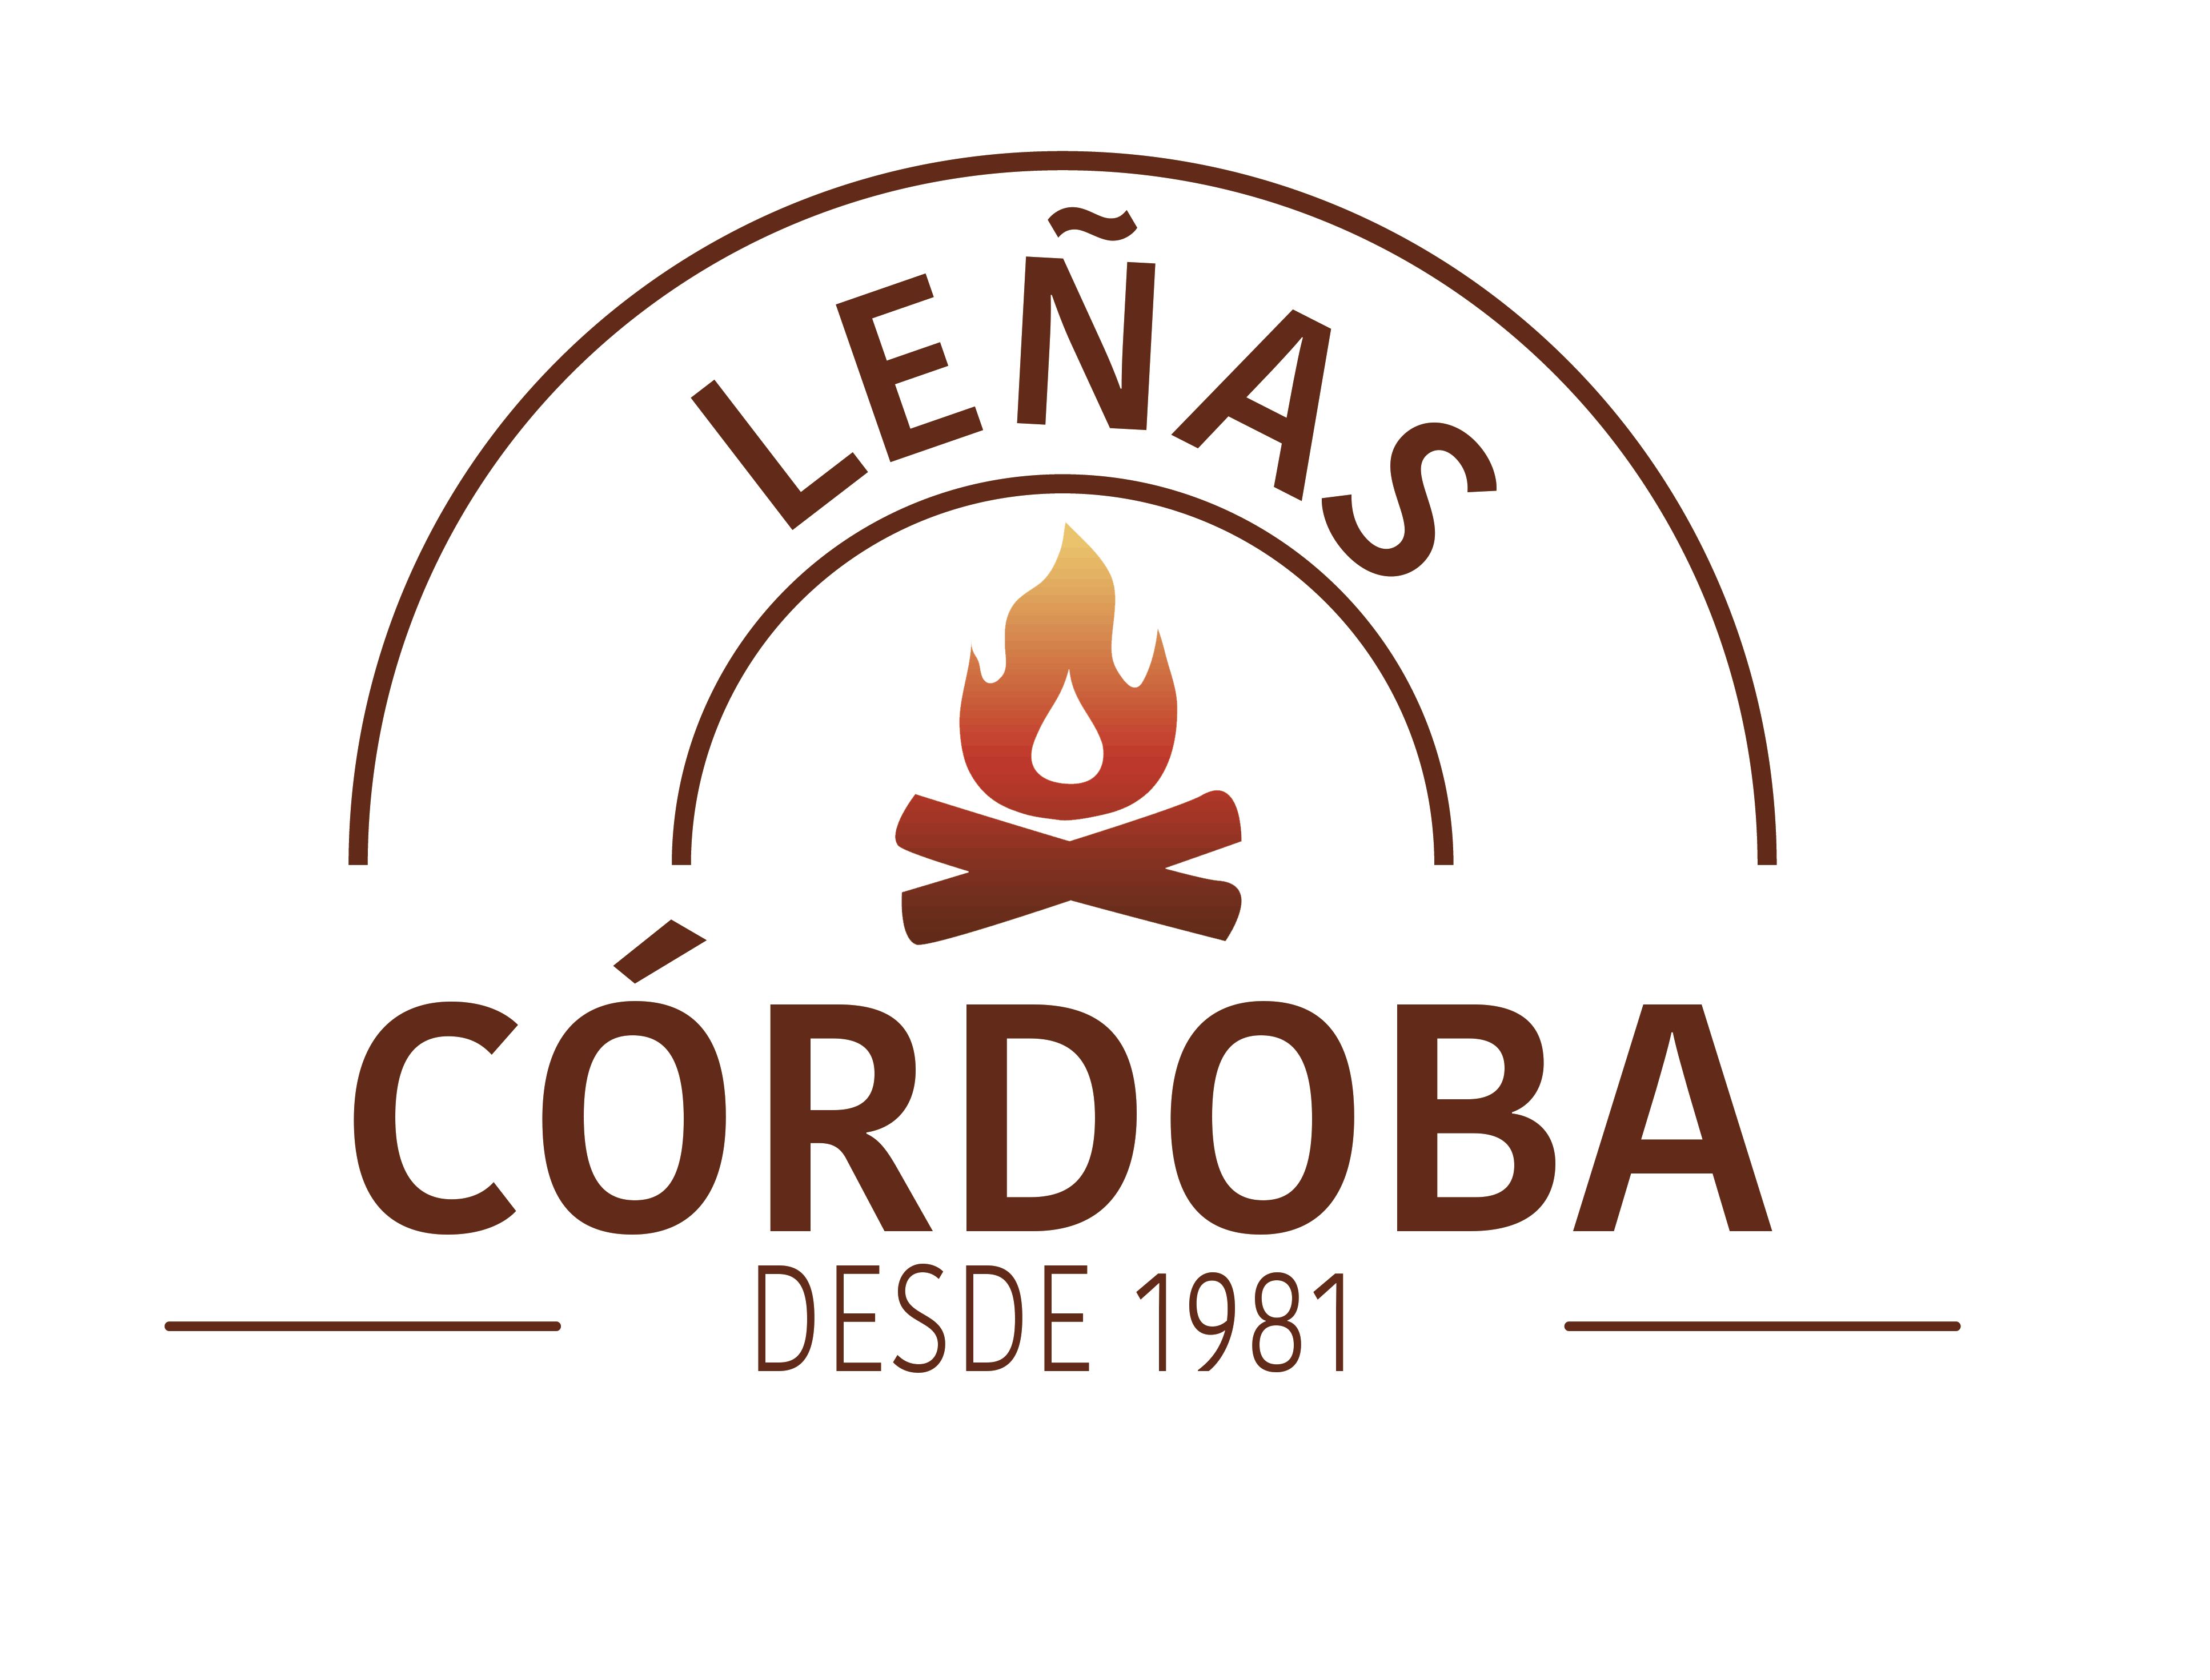 Leñas Córdoba - Venta de leña de encina y olivo